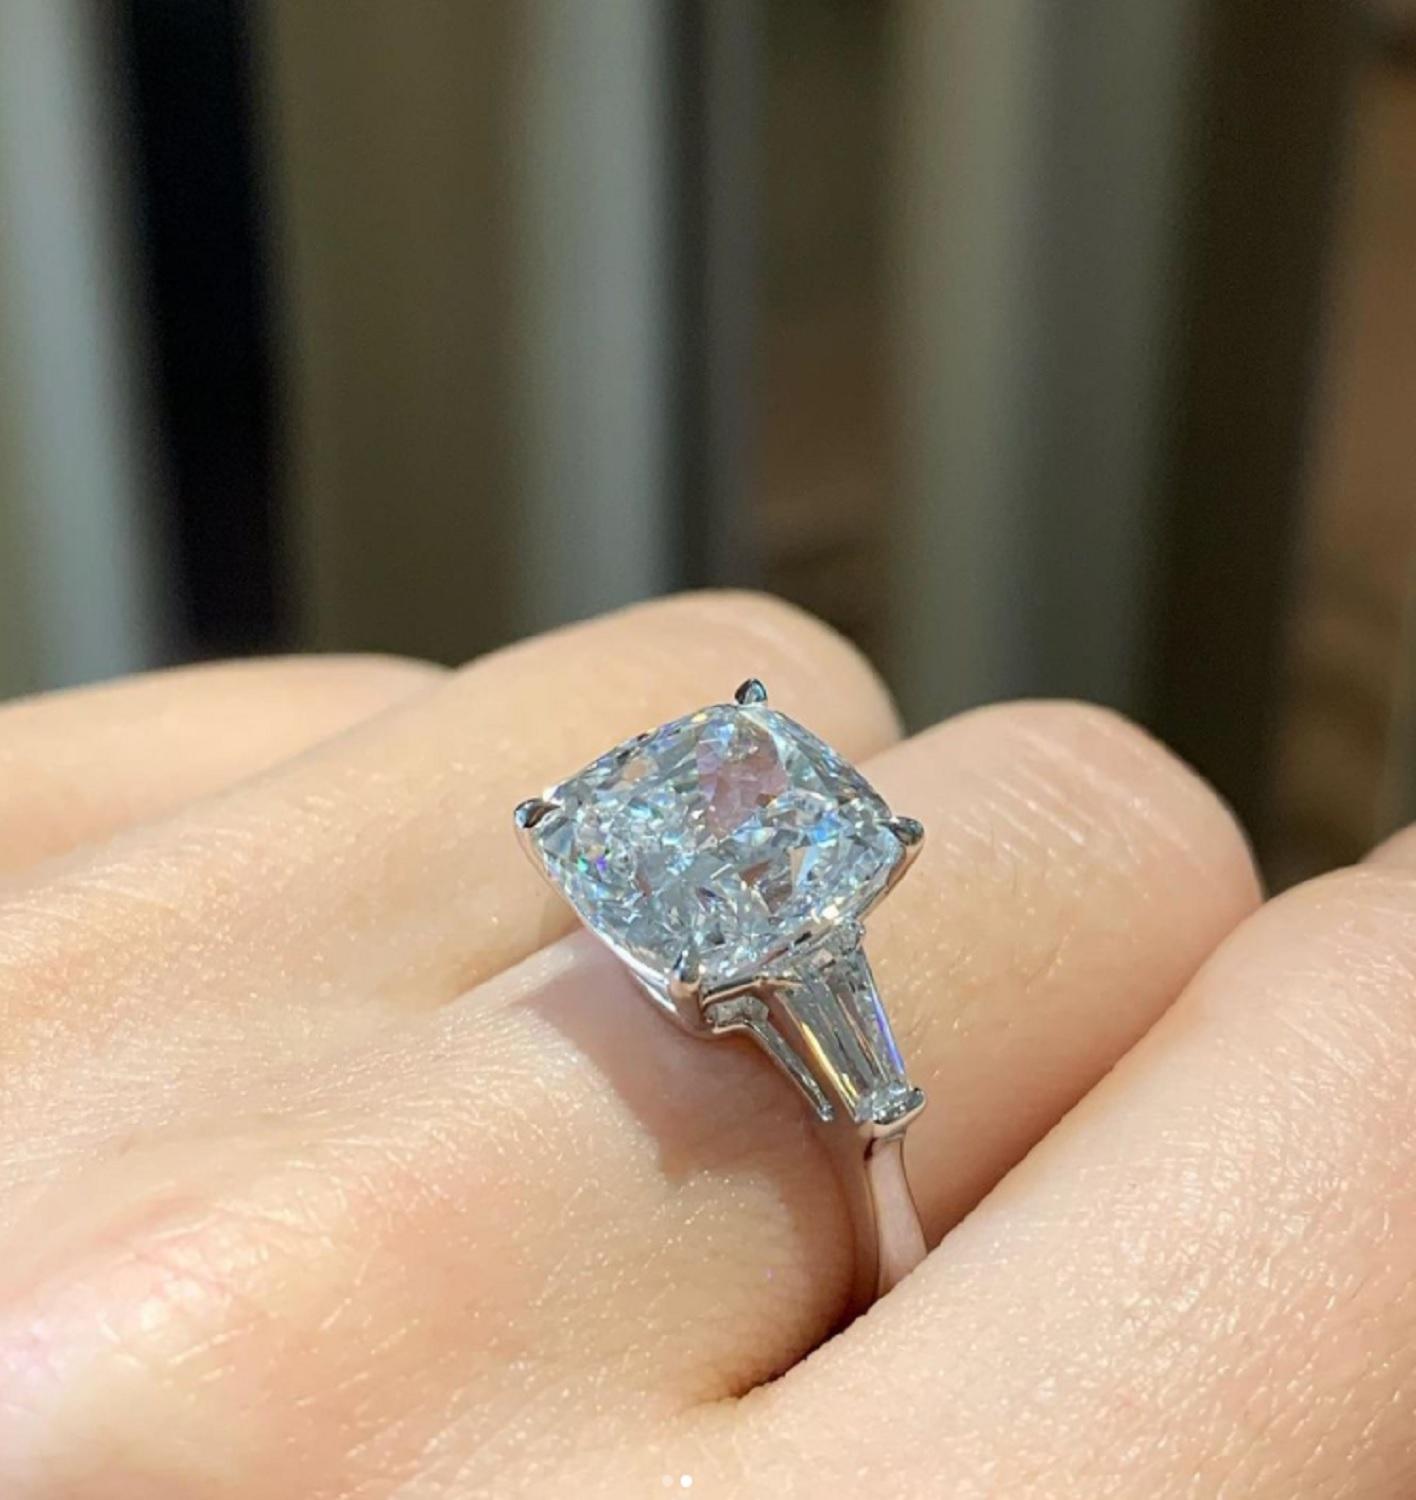 Ein exquisiter Ring, bestehend aus einem GIA-zertifizierten 5-Karat-Diamanten im Kissenschliff und zwei seitlich verjüngten Baguette-Diamanten. 
Die Fassung ist aus massivem 18 Karat Weißgold gefertigt.
 E FARBE
MAKELLOSE KLARHEIT